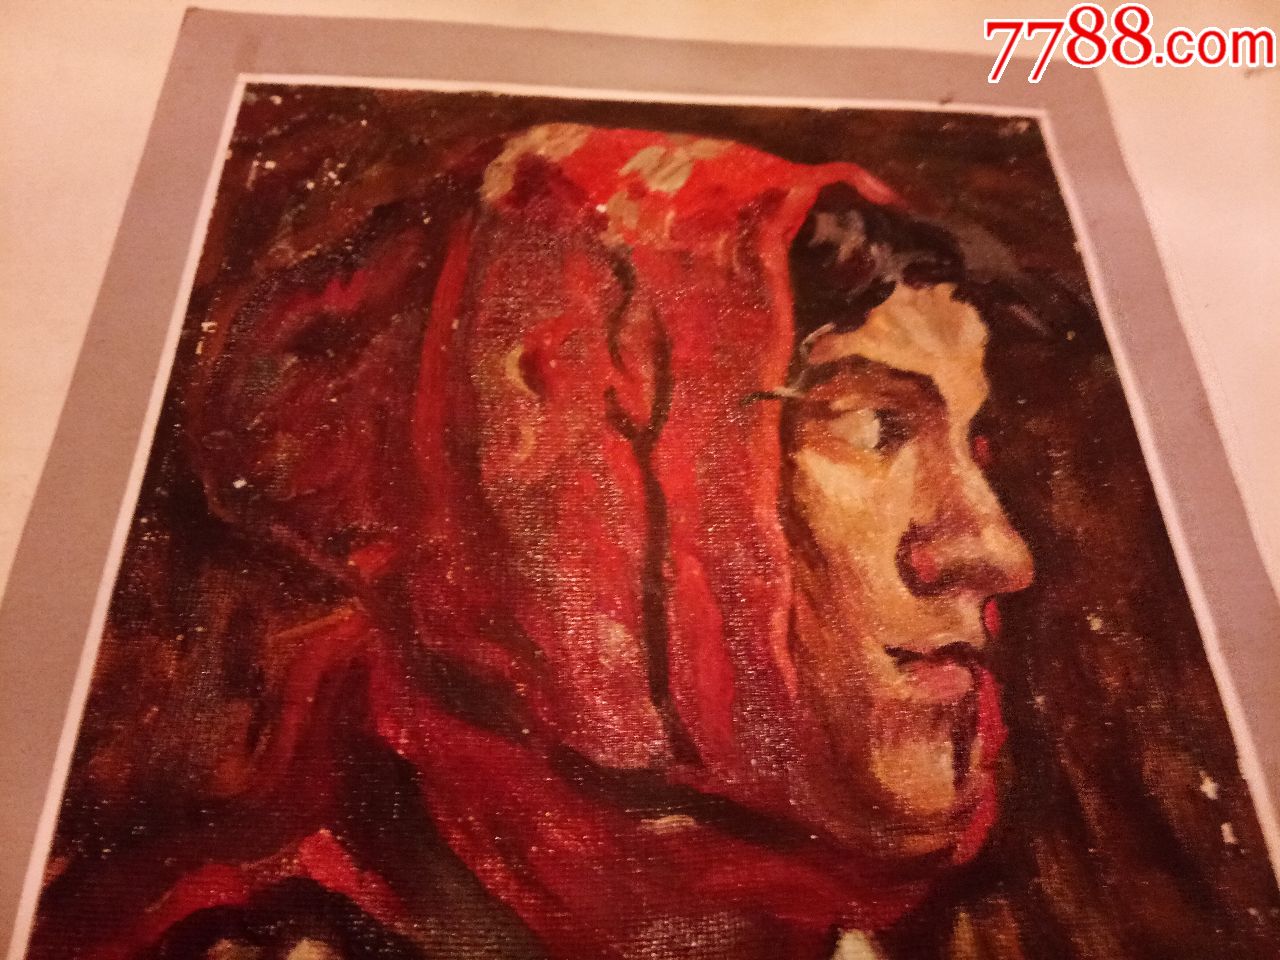 围红头巾的女青年油画【19884临】【长27cm宽19cm】